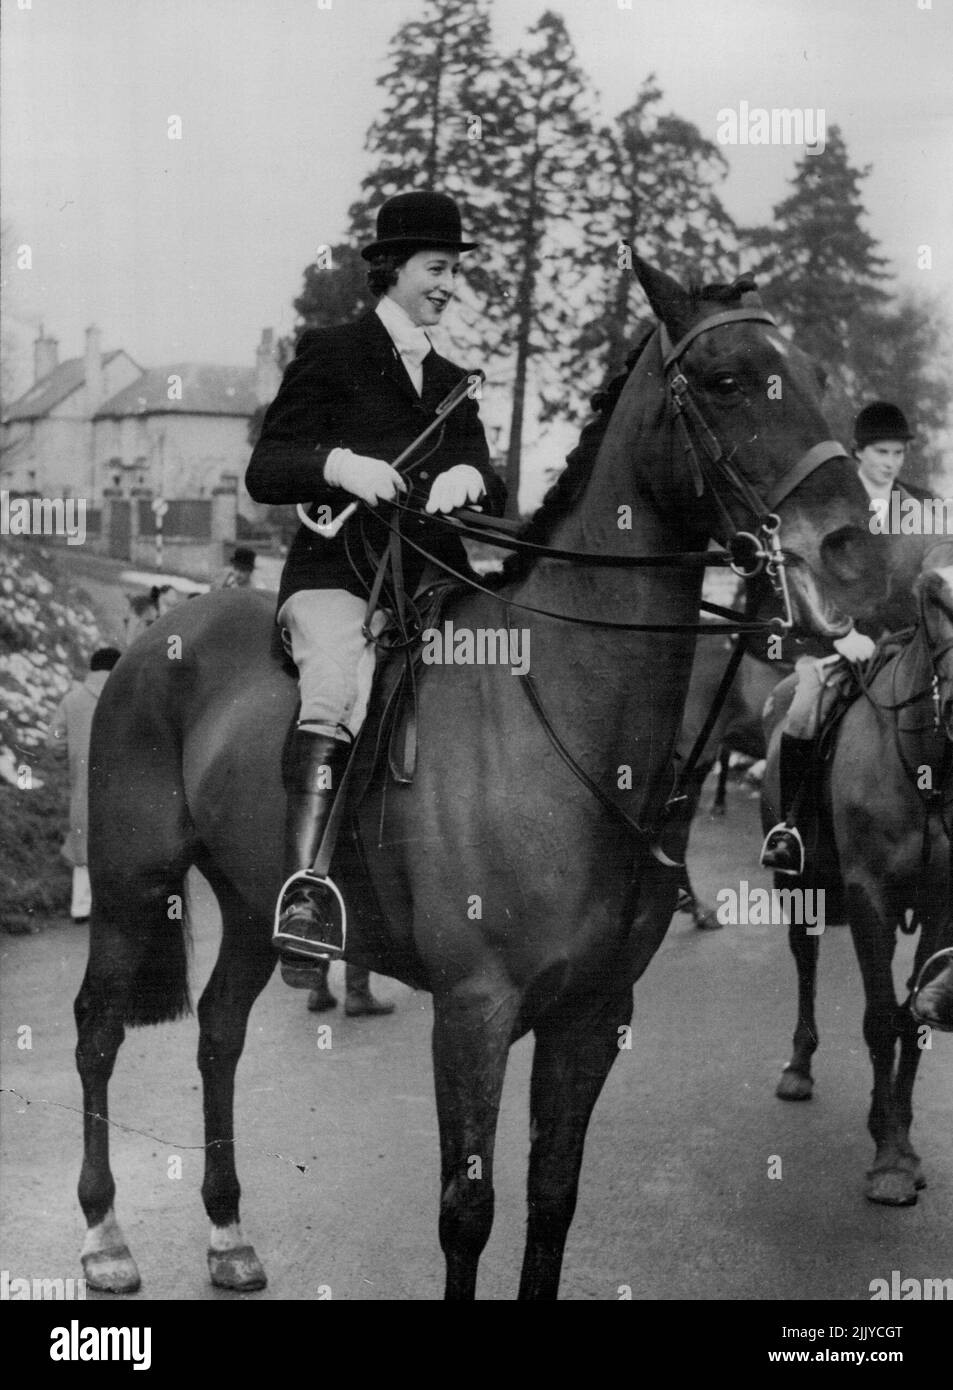 la princesse g est jetée par son cheval - vue à cheval Smokey, un vieux gelding brun de dix ans, avec la chasse de Pytchley hier est la princesse Alexandra, fille de la duchesse de Kent. Pendant la chasse, la princesse a été jetée de son cheval en traversant un champ près de Holdenby House, Northants. Elle a atterri sur un terrain mou et boueux, mais a remonté son cheval et a attrapé la chasse, qui était alors un champ devant lui. Le pays de Pytchley est considéré comme l'une des zones les plus difficiles à chasser en Angleterre. Le duc de Windosr et le regretté roi George VI y ont chassé. 09 janvier 1955. (Photo de Reuterphoto). Banque D'Images